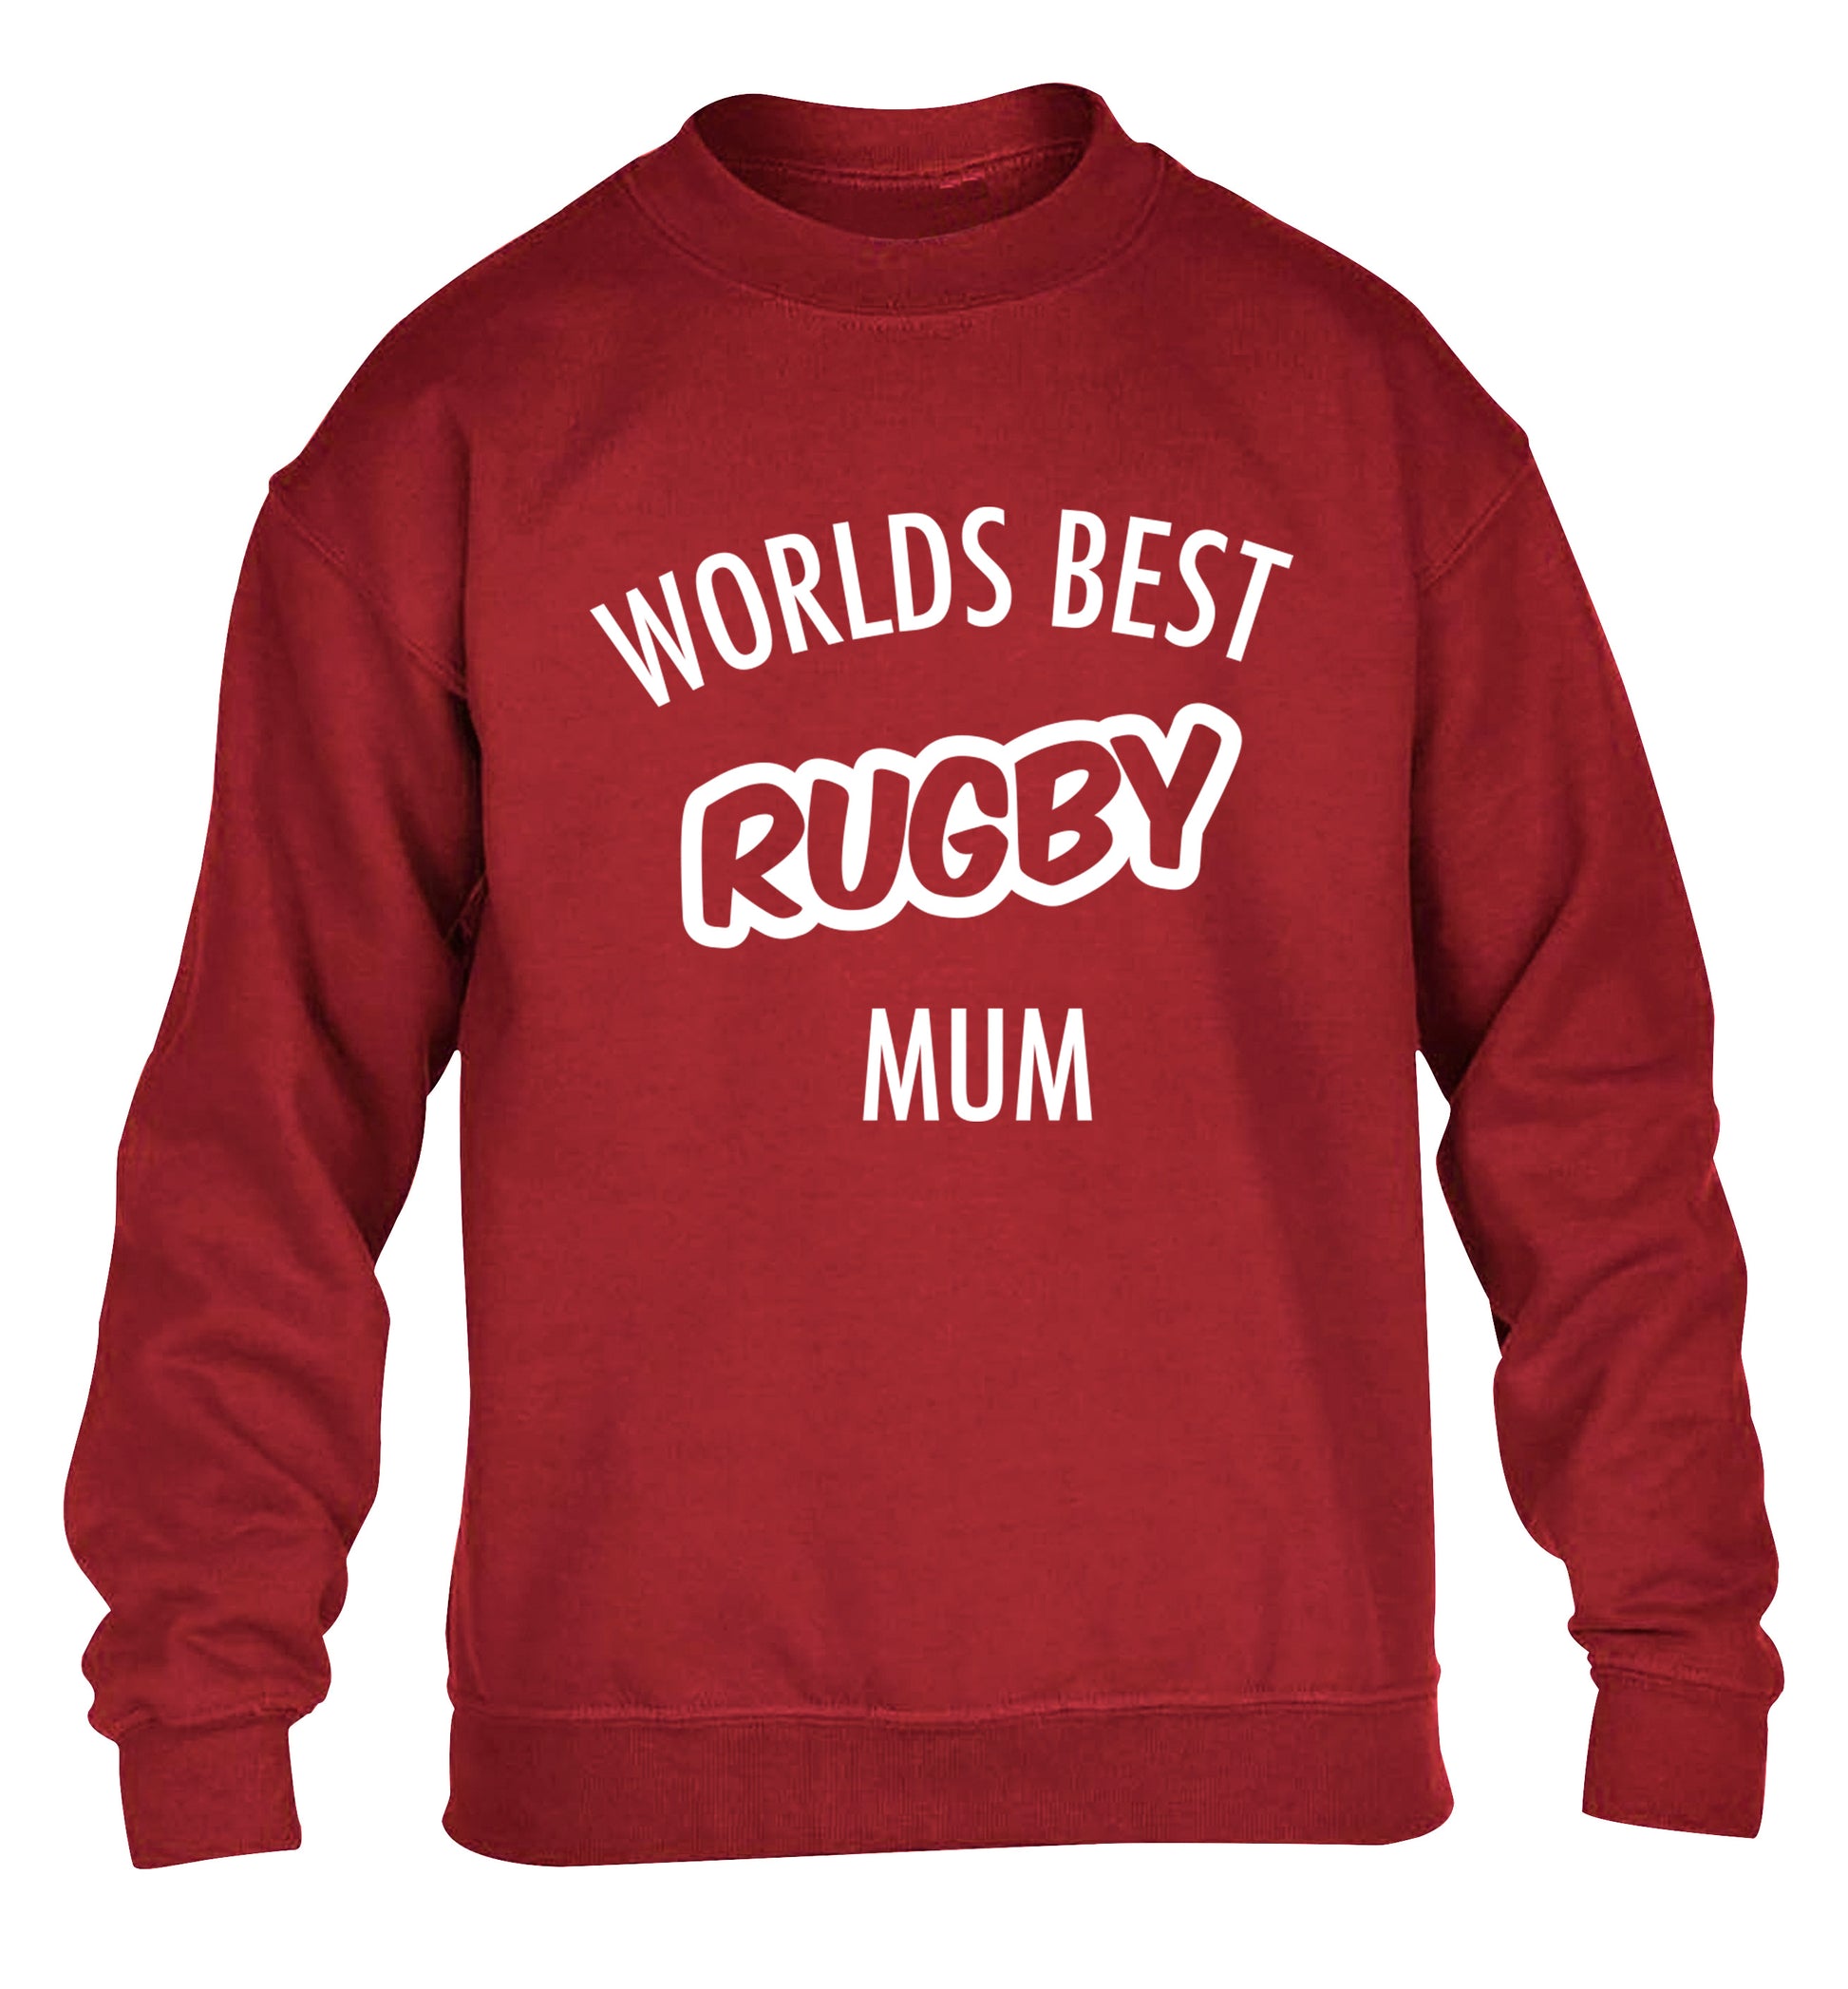 Worlds best rugby mum children's grey sweater 12-13 Years